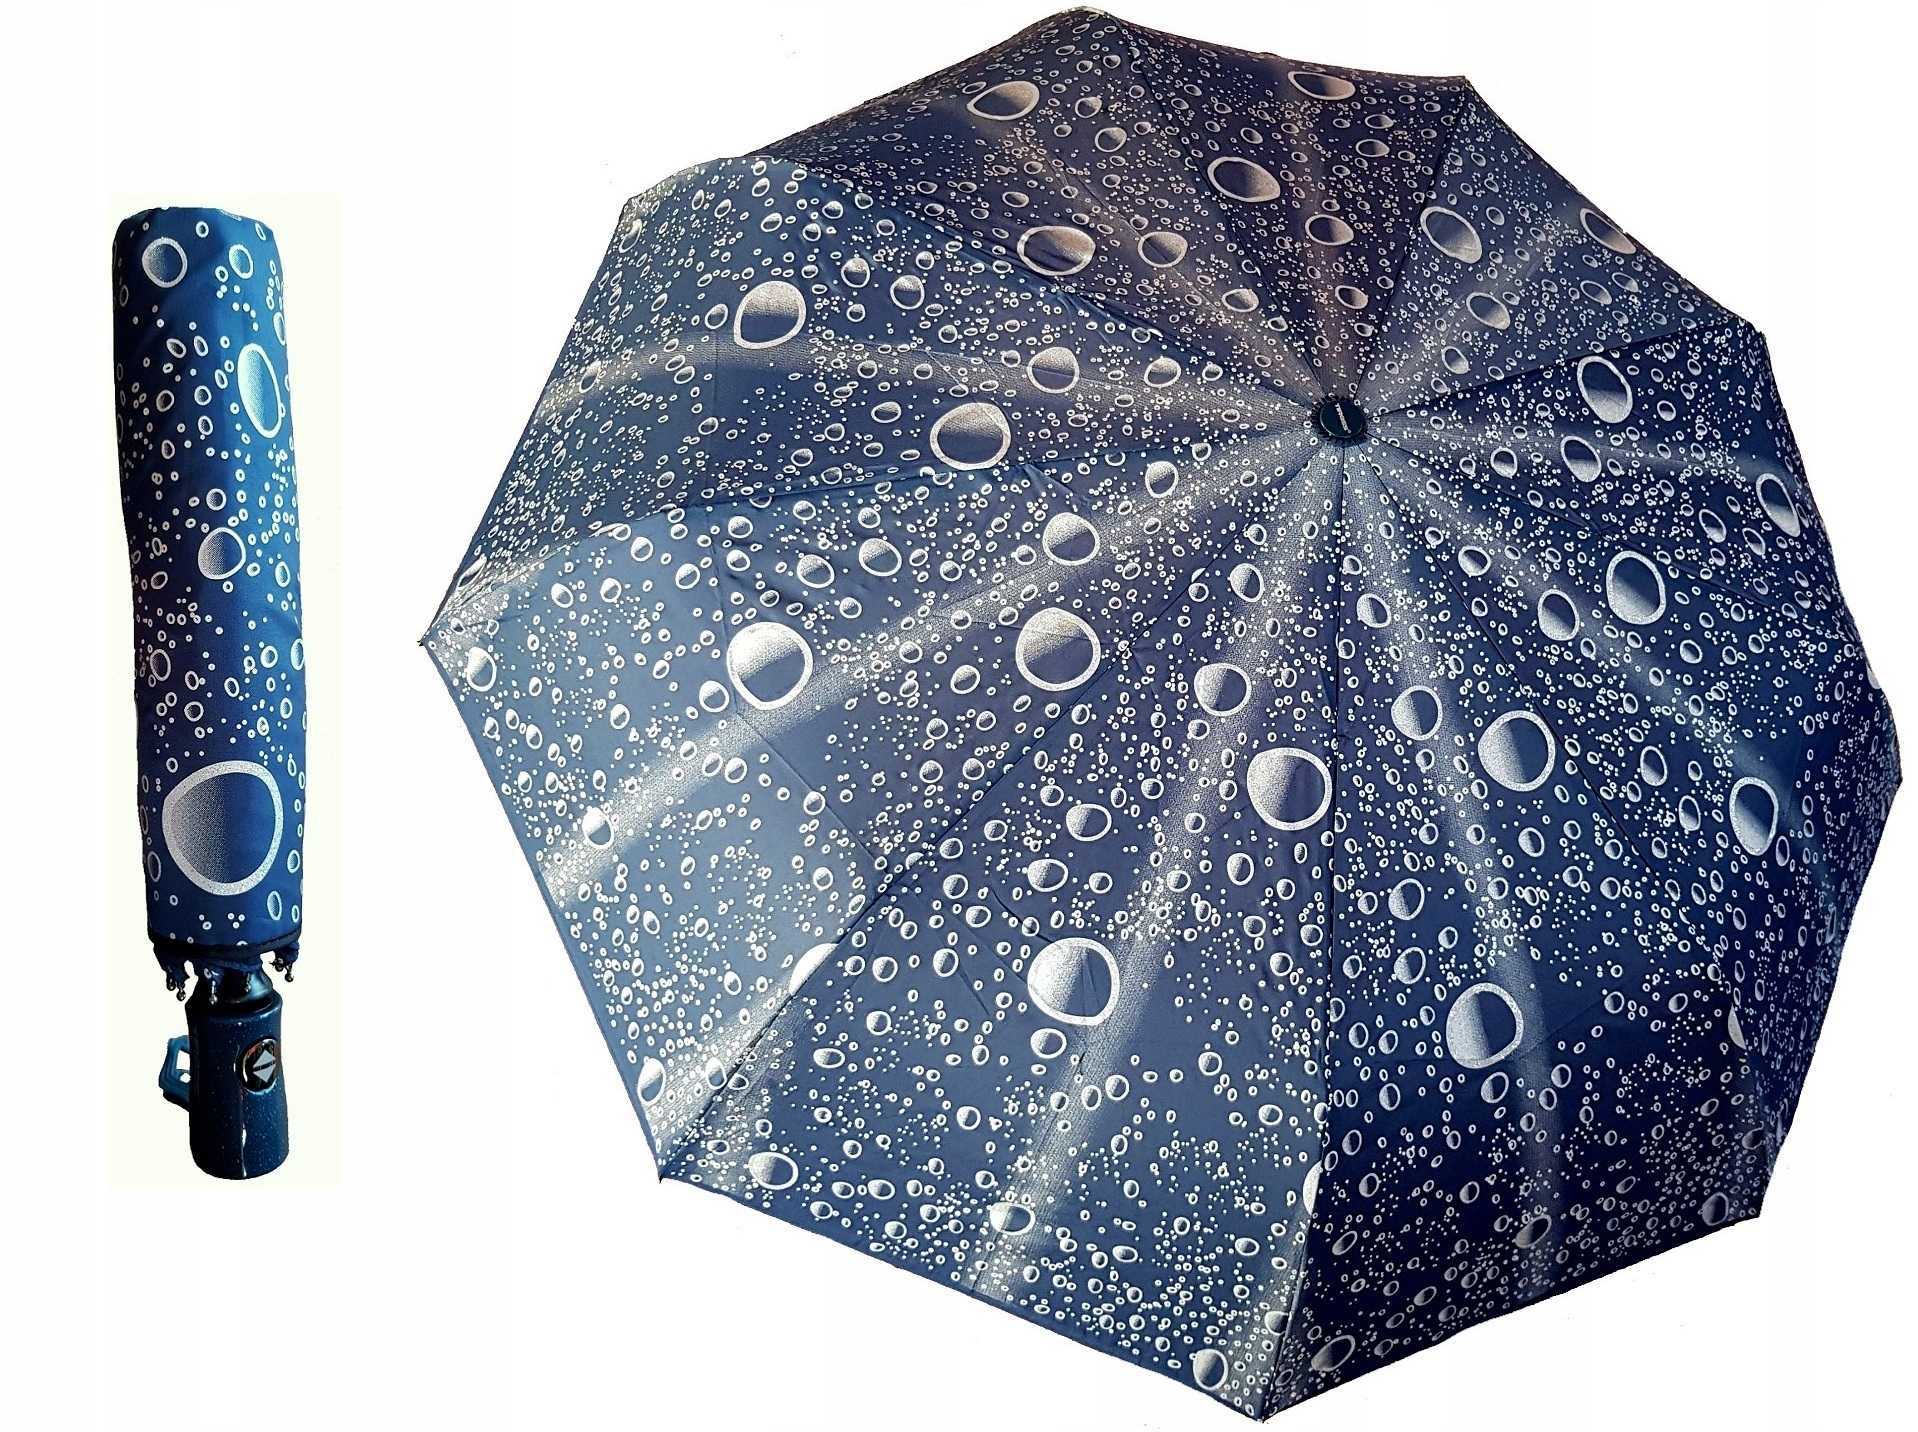 12 лучших производителей зонтов